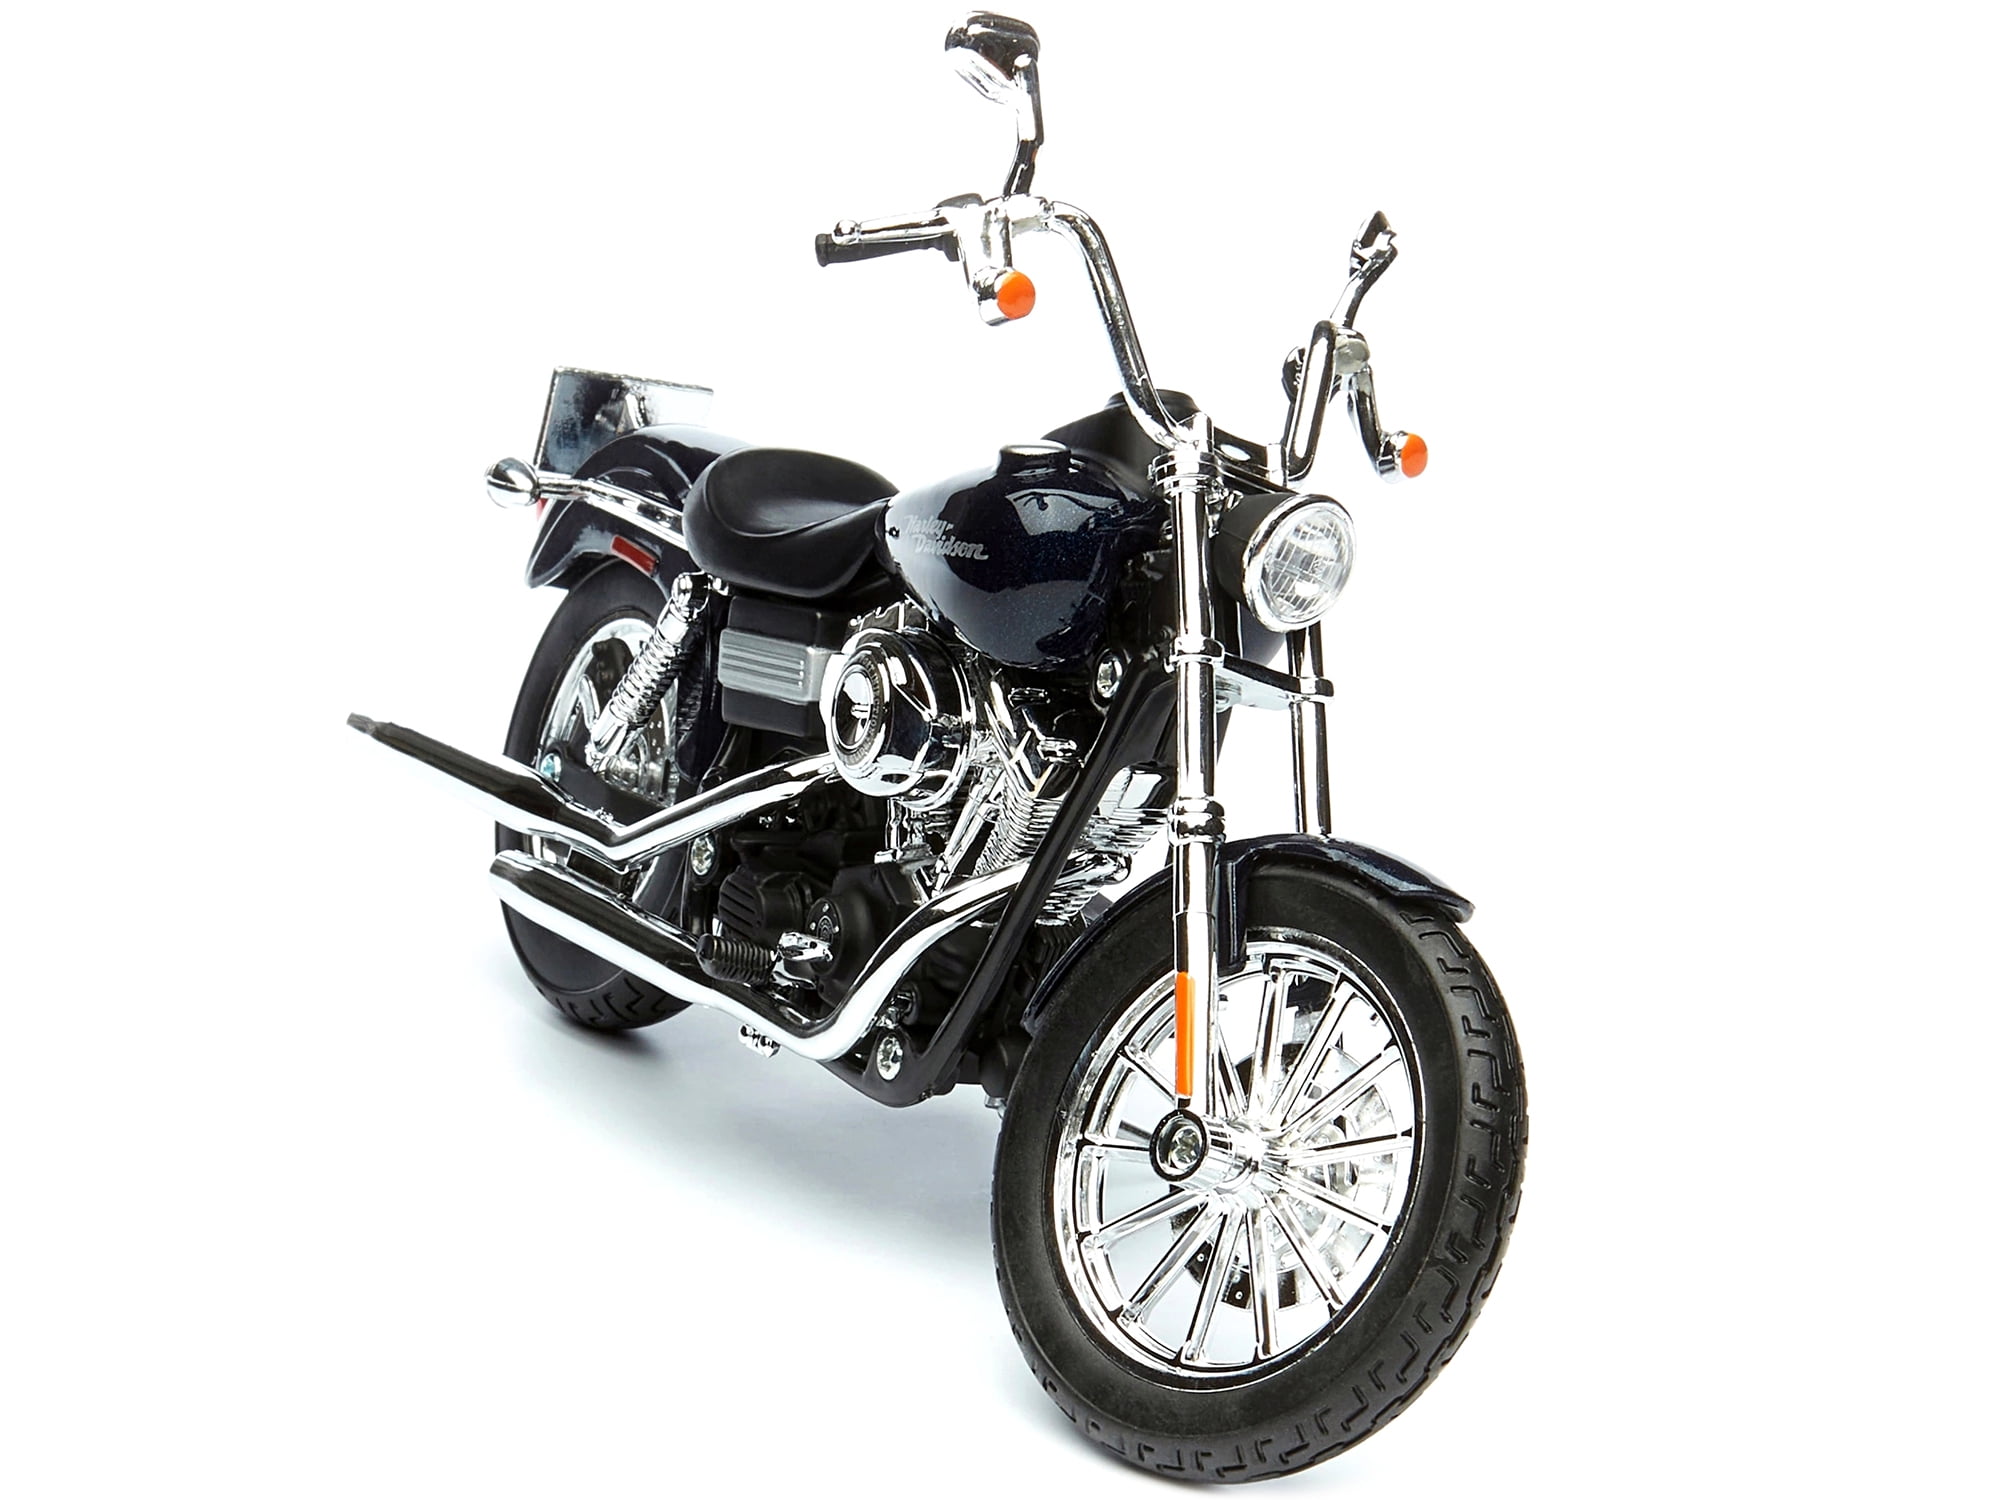 Maisto 1:18 Harley Davidson 2006 FXDBI Dyna Street Bob MOTORCYCLE BIKE Model 